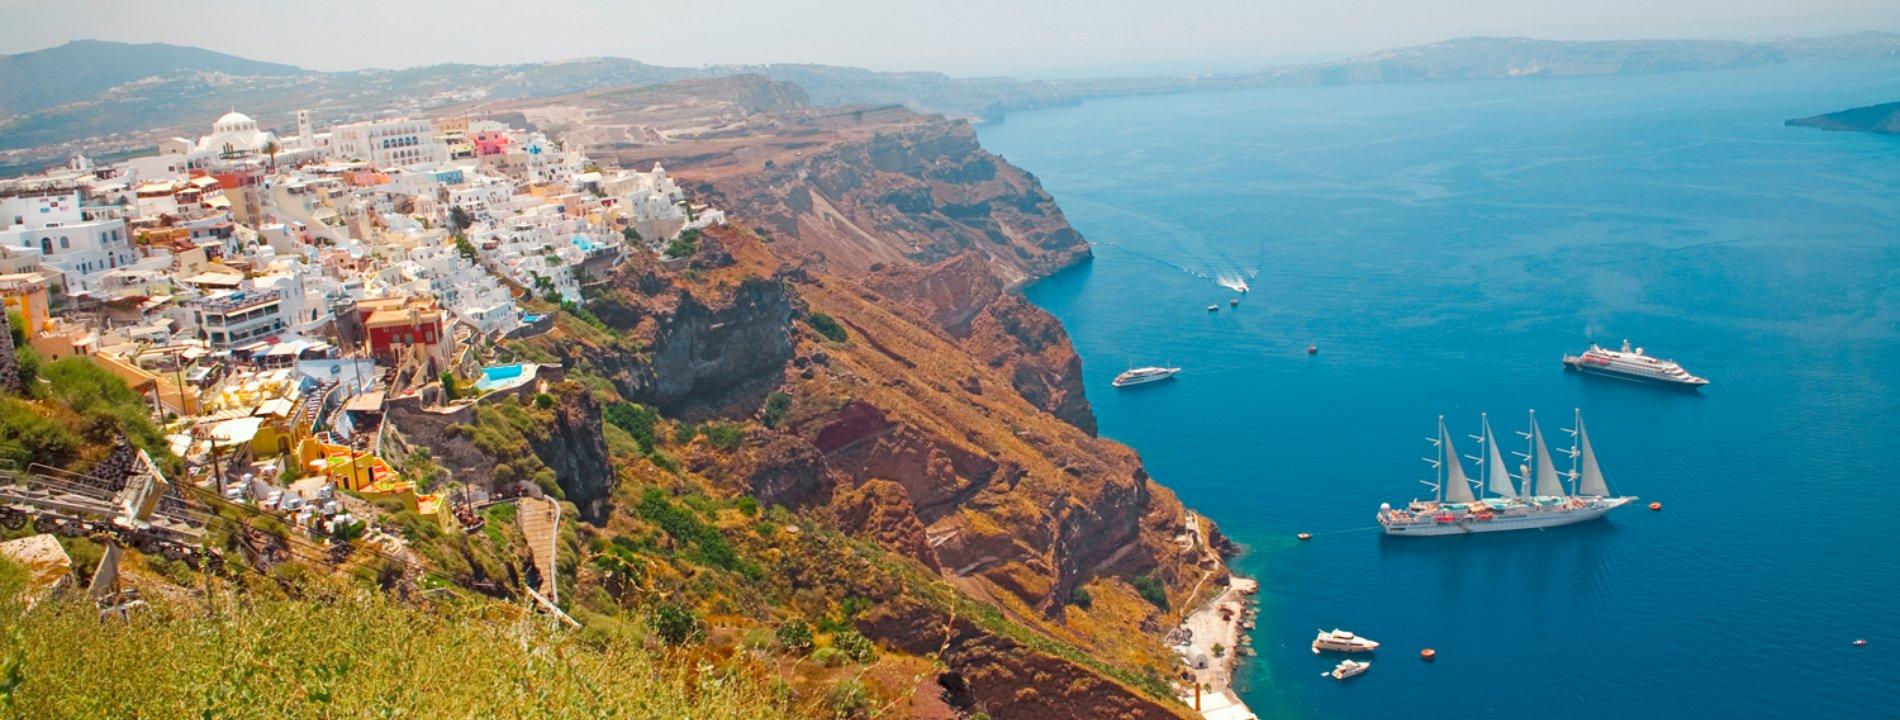 Vacanze a Santorini | Eden Viaggi